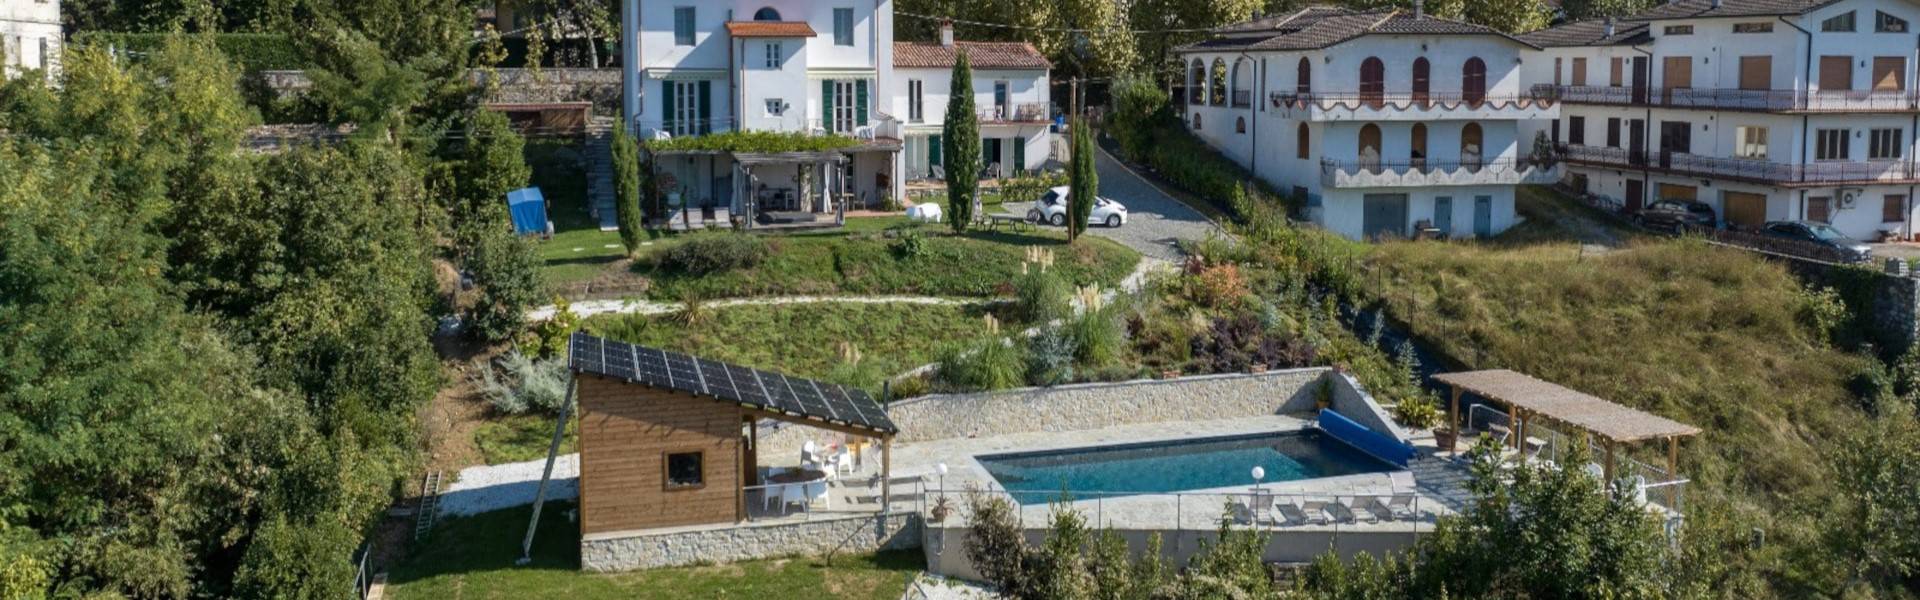 Nostalgische Toscaanse villa met zwembad: Villa Pavone, de ideale plek voor ontspanning en luxe in Italië.